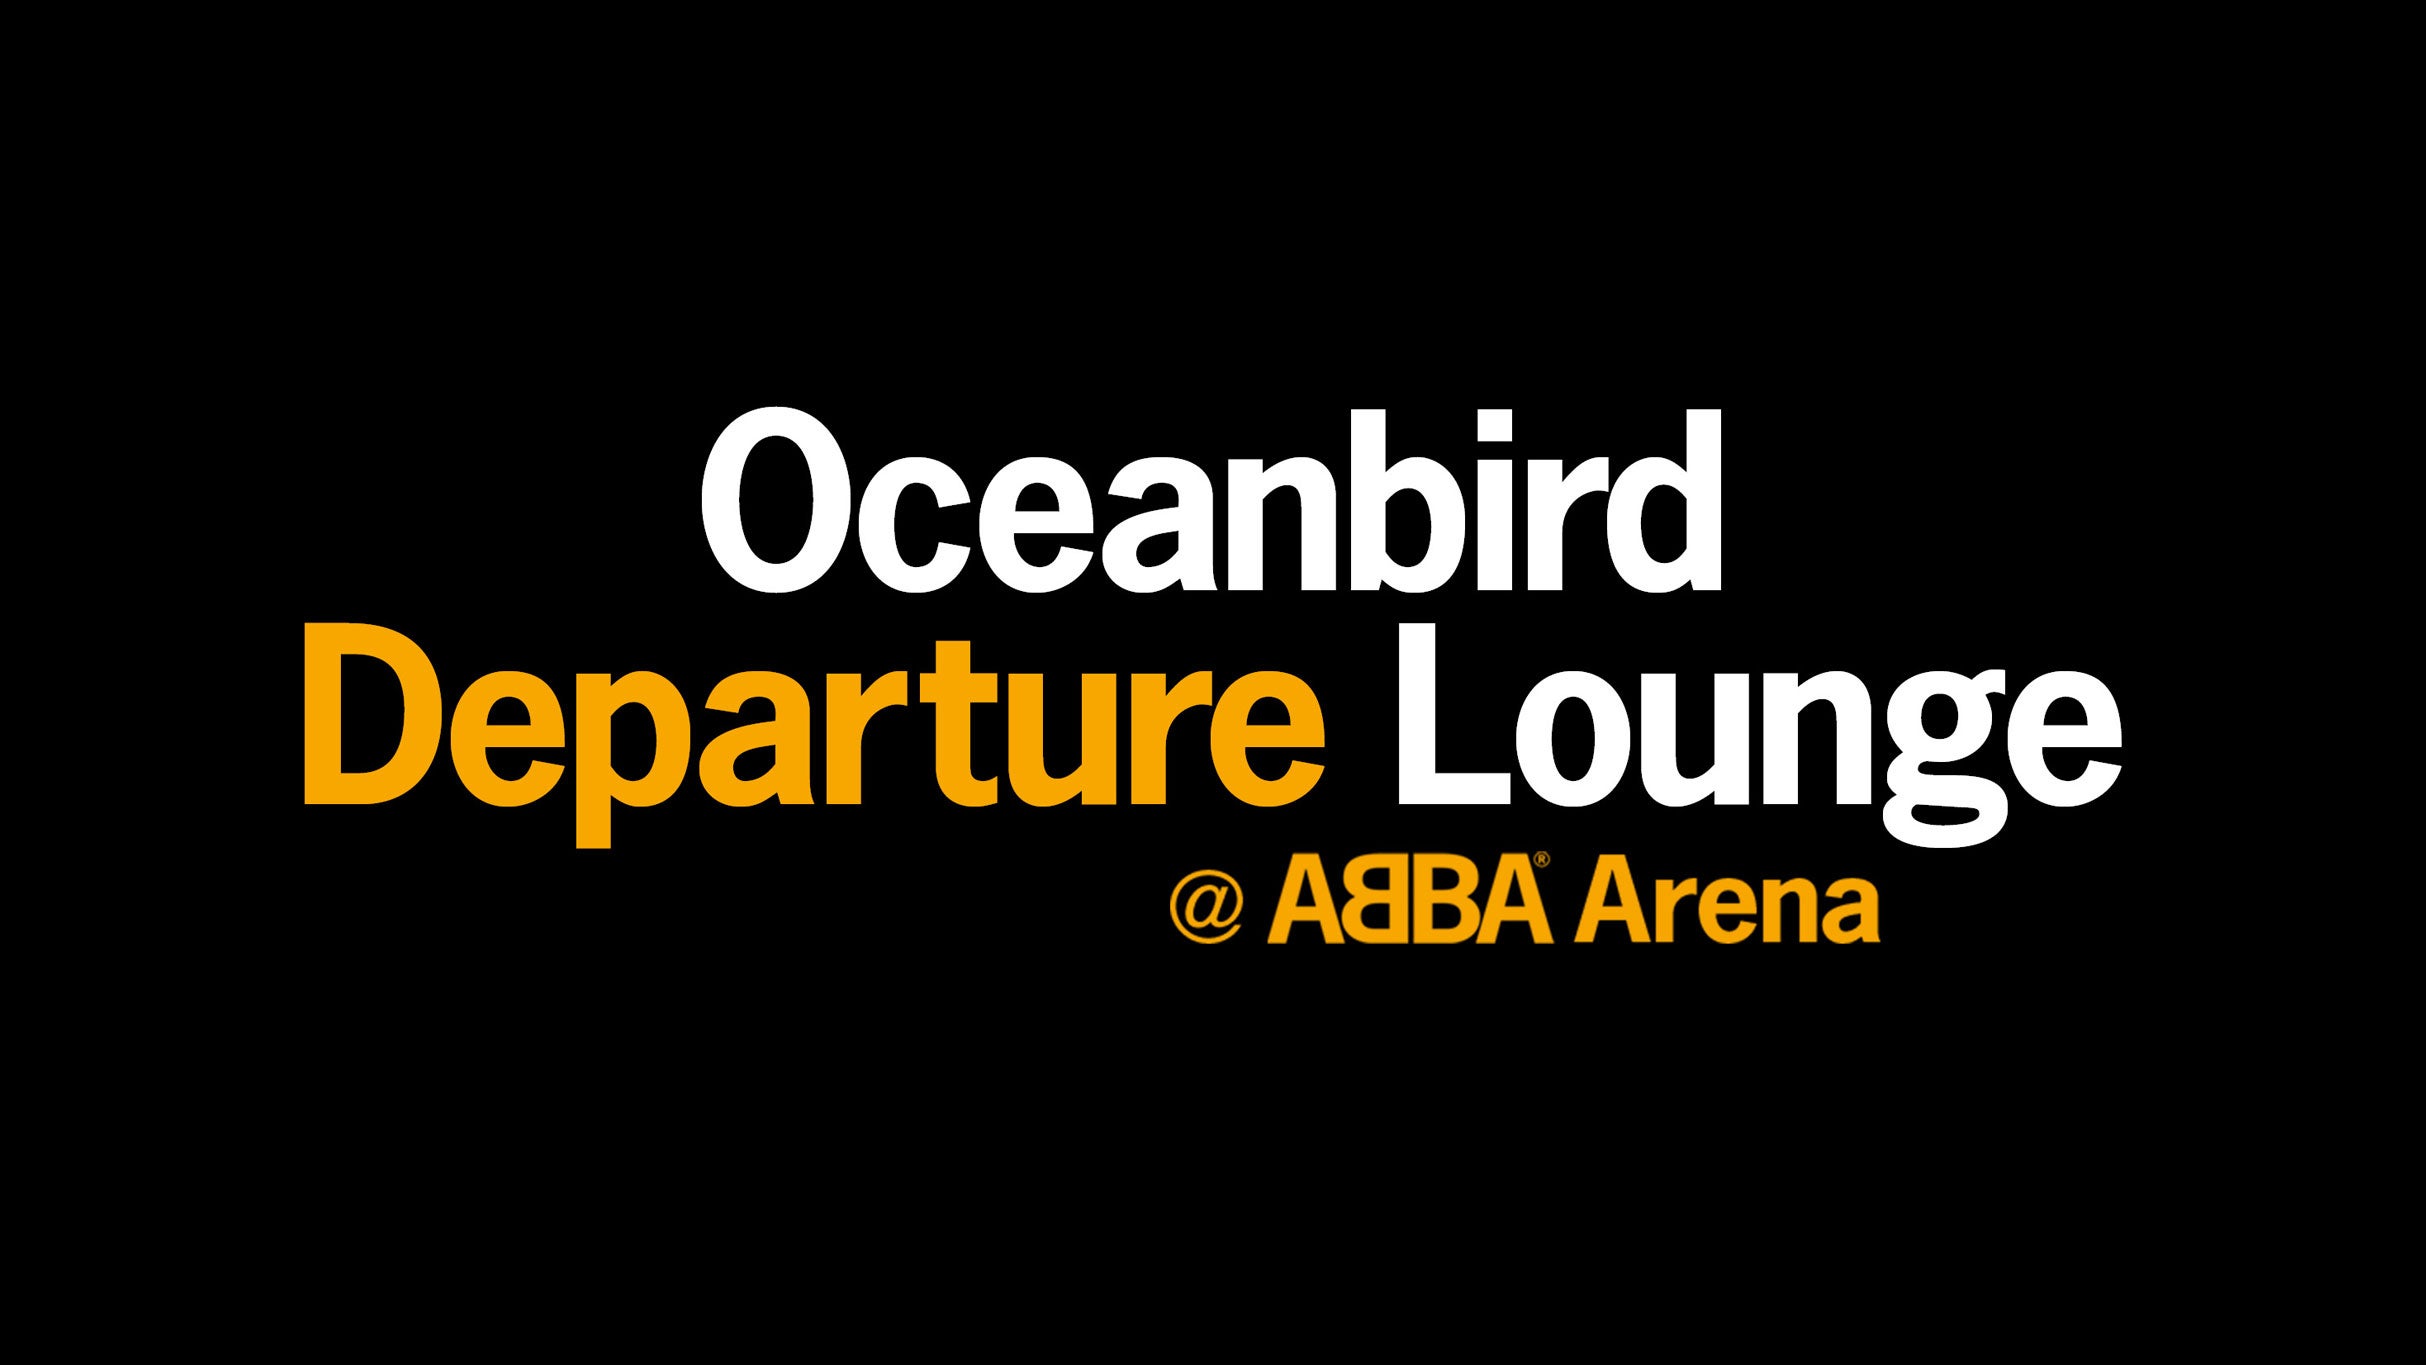 The Oceanbird Departure Lounge